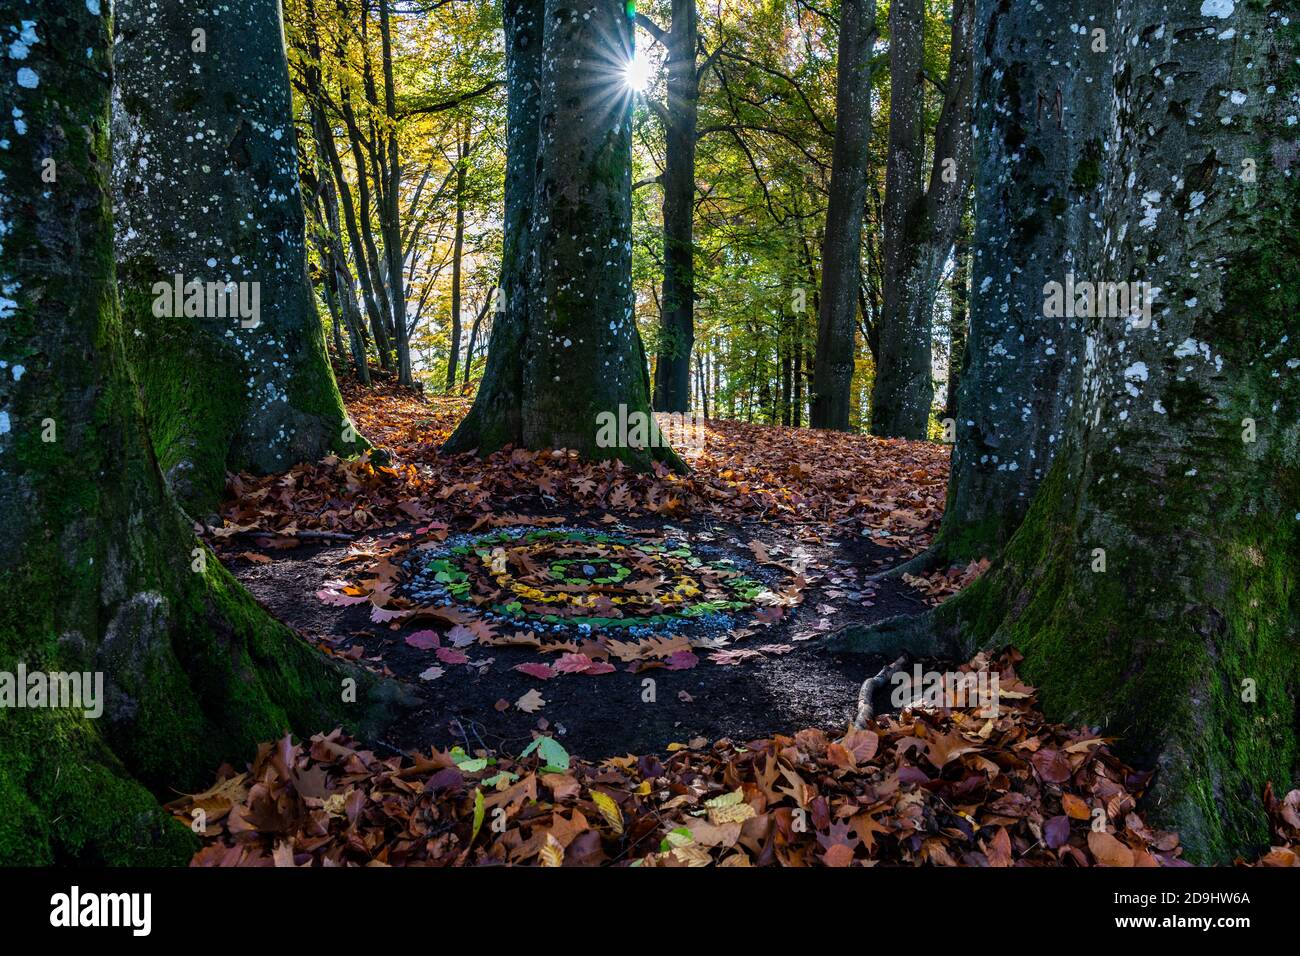 Im Herbstwald haben Kinder einen bunten Kreis mit Blätter, Steinen und Rinde gemacht. Ein Kunstwerk, von der Sonne durch die Bäume angeleuchtet. Estrella Foto de stock